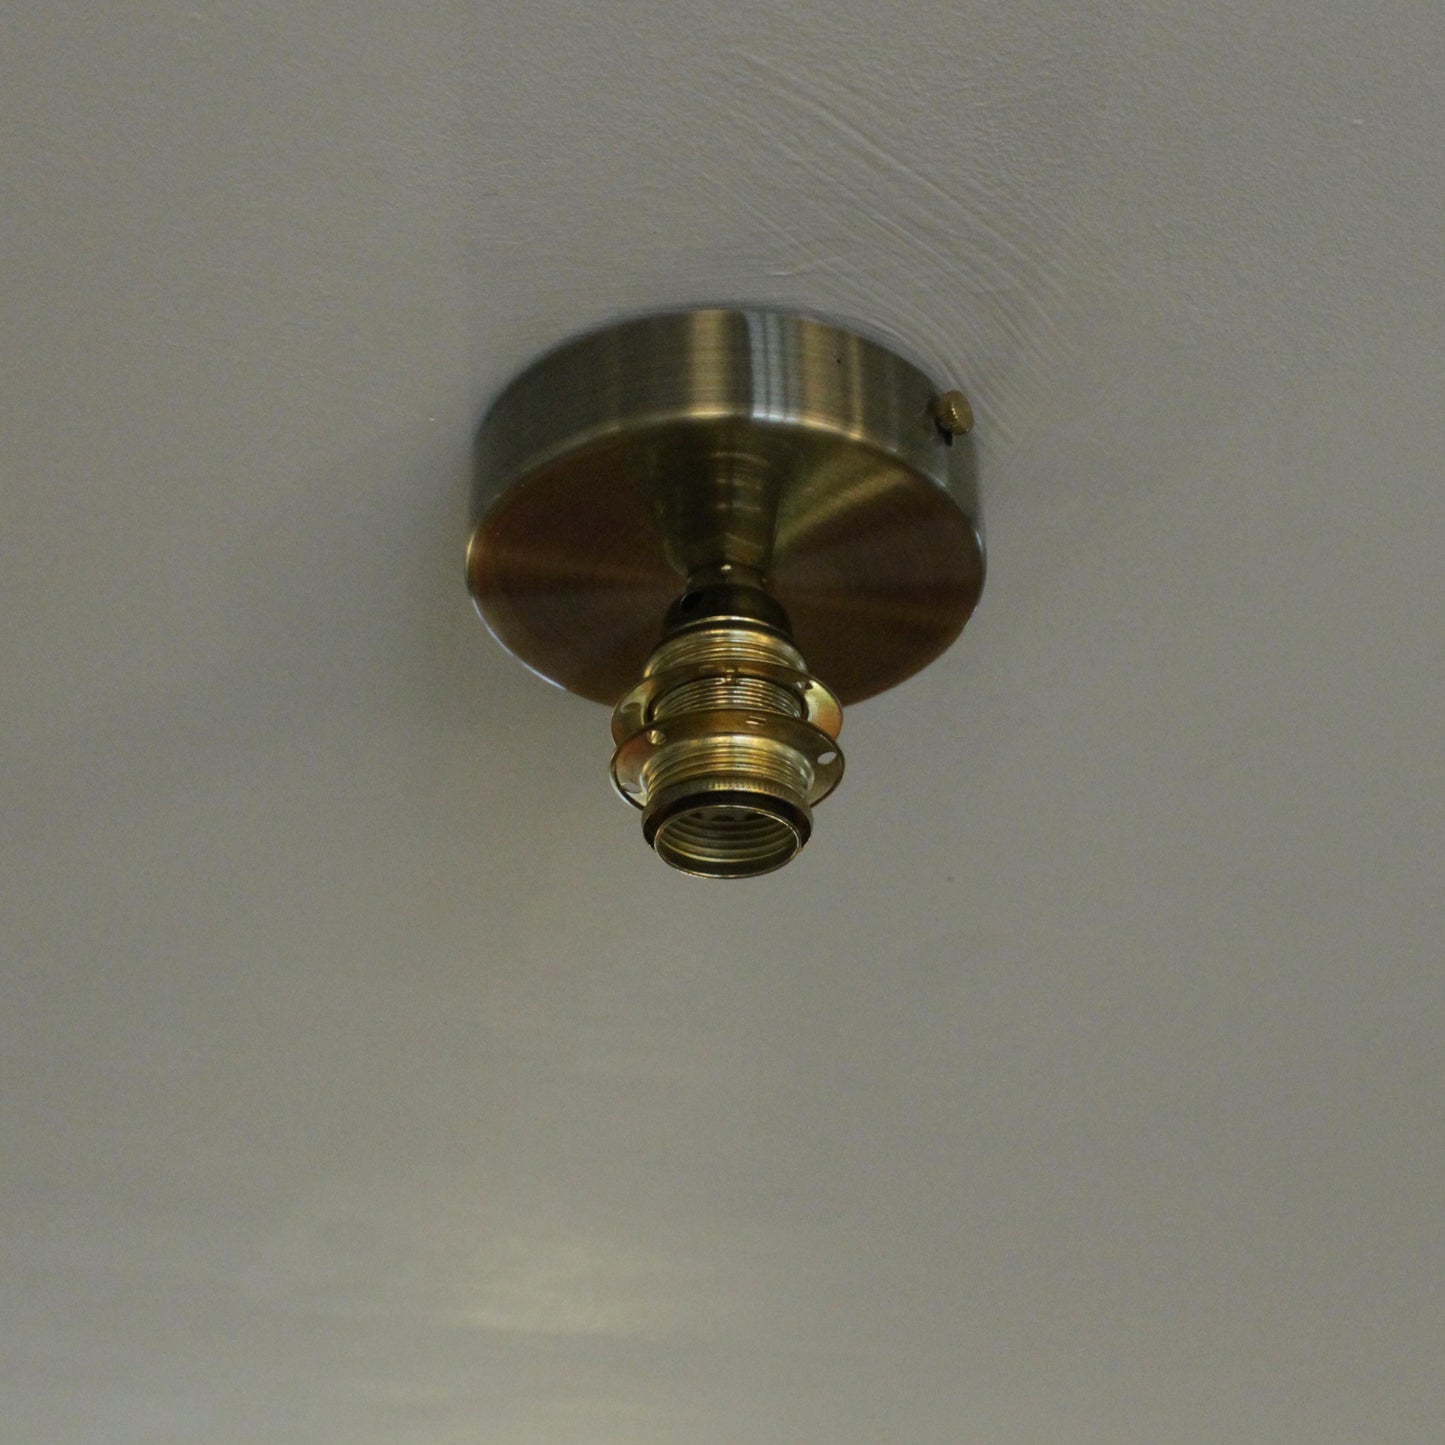 Flush ceiling light fitting